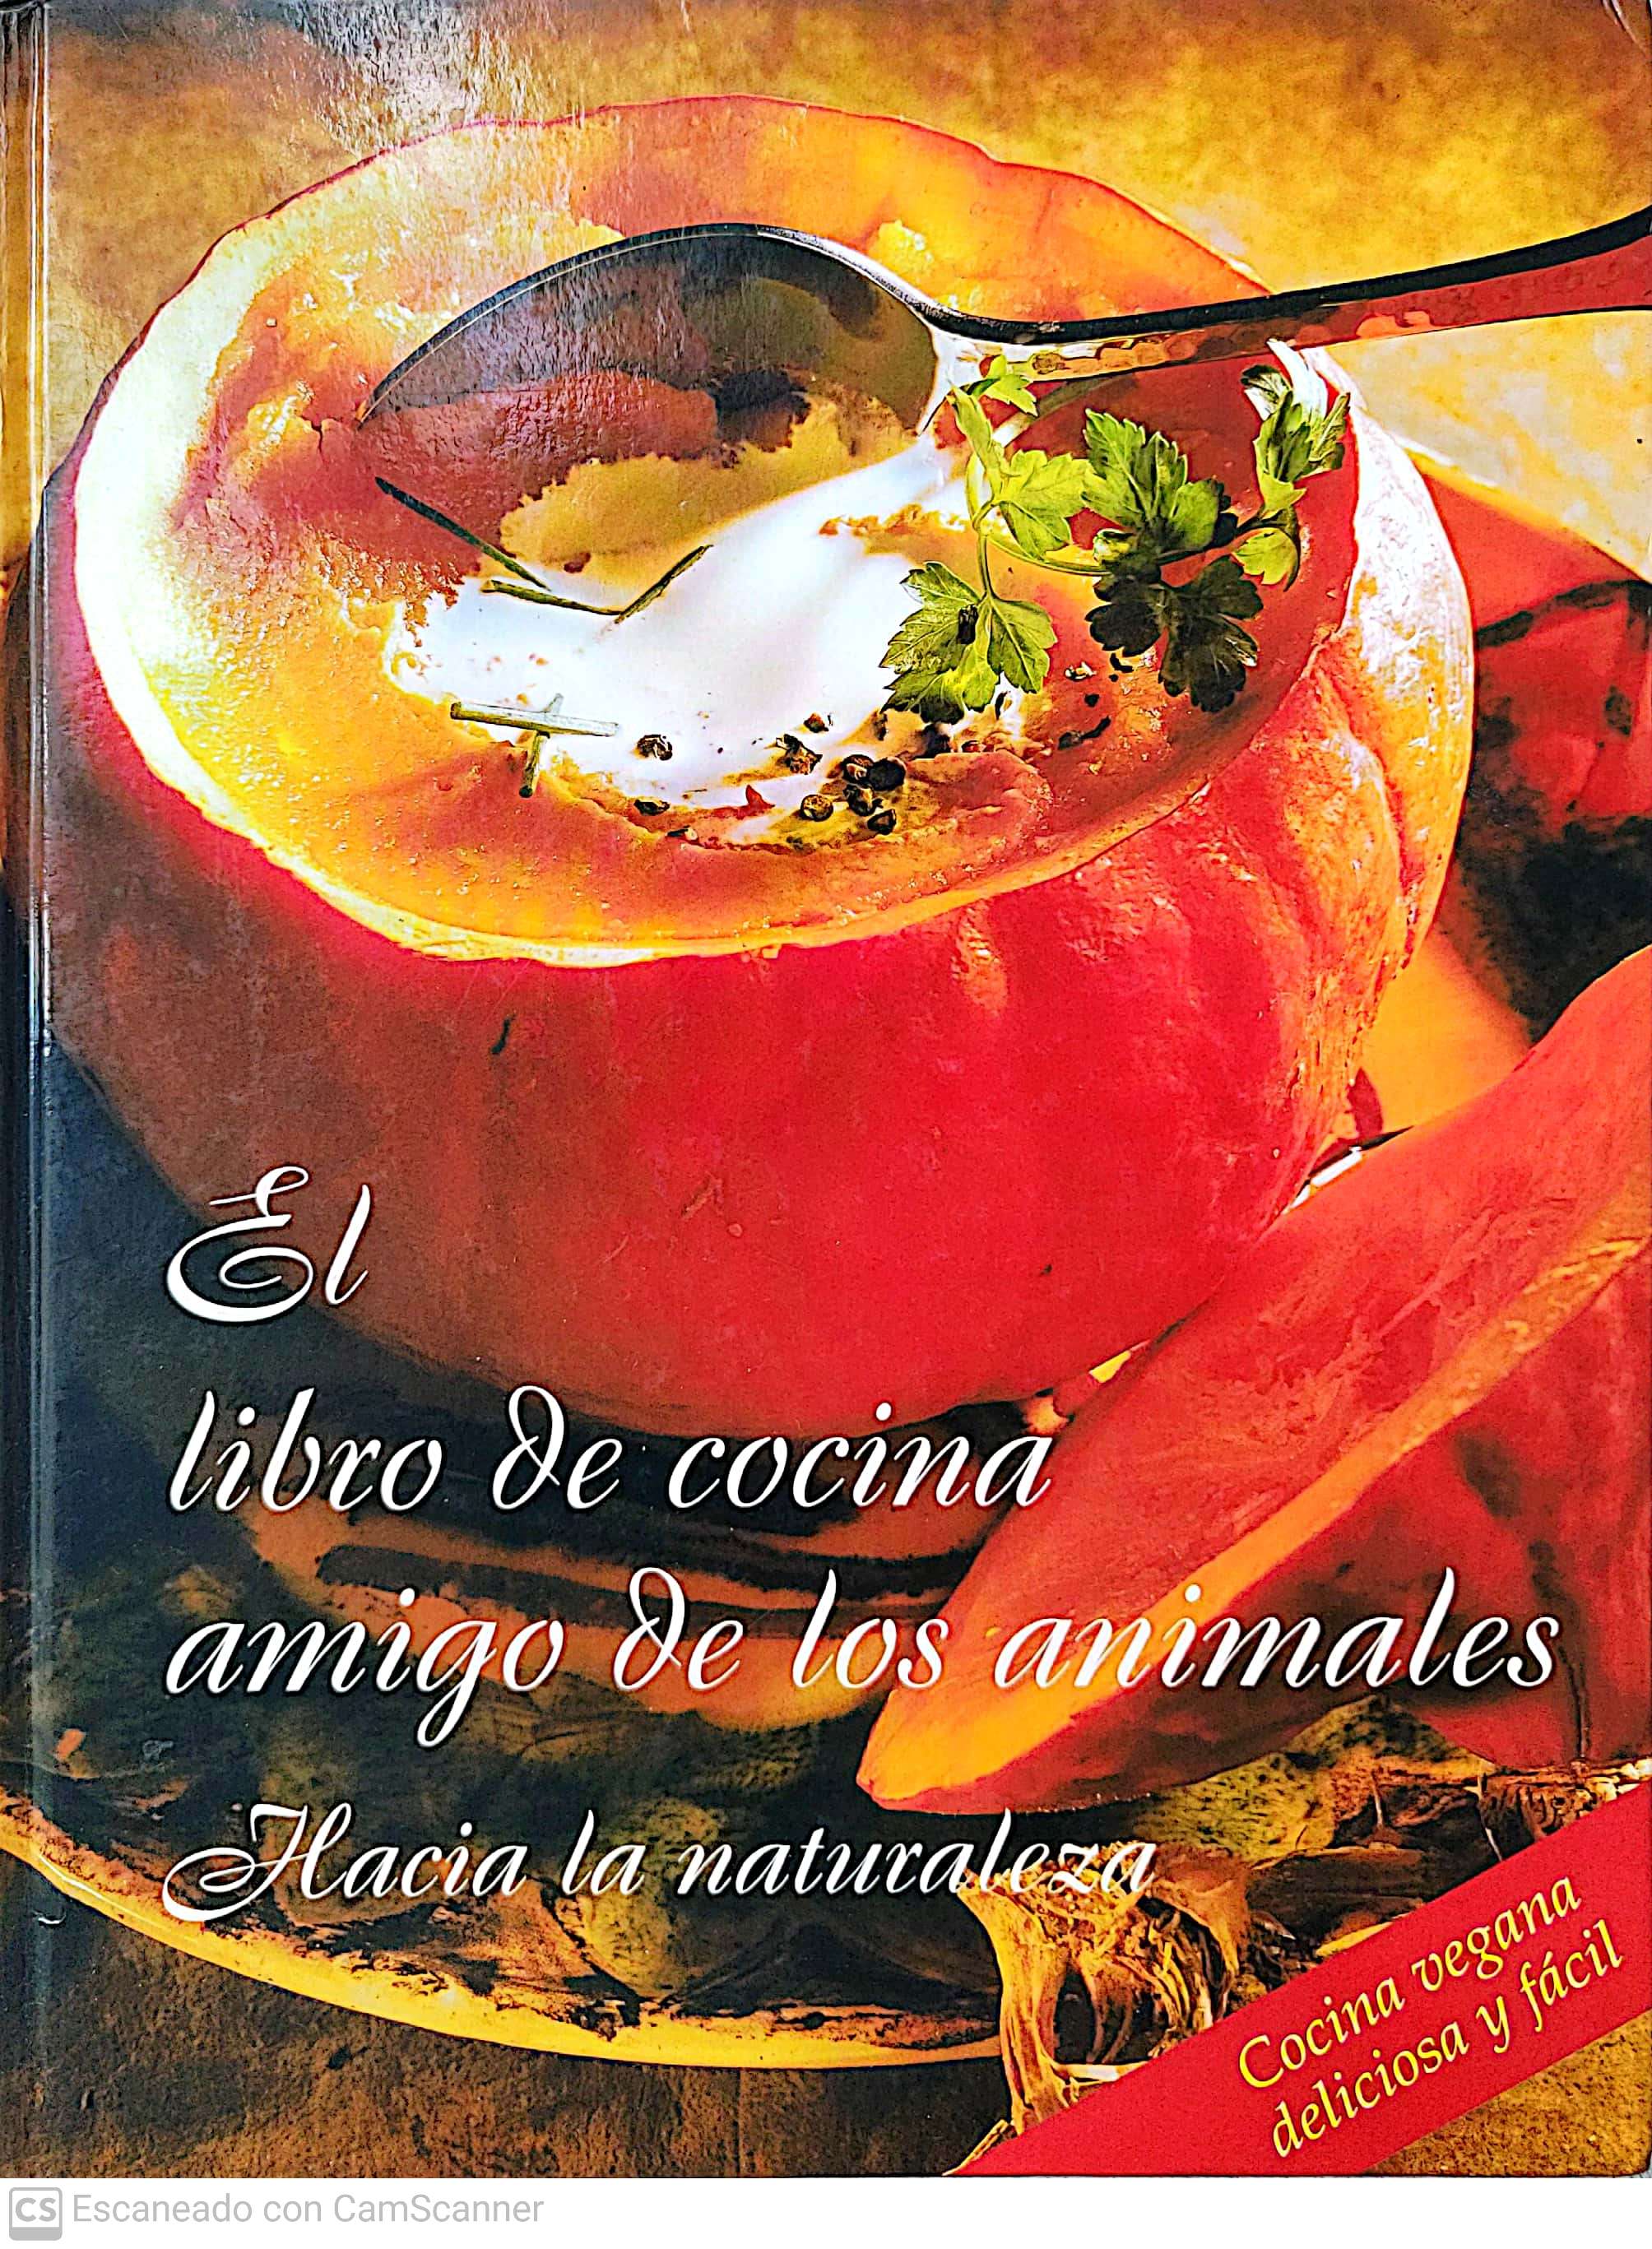 El libro de cocina amigo de los animales